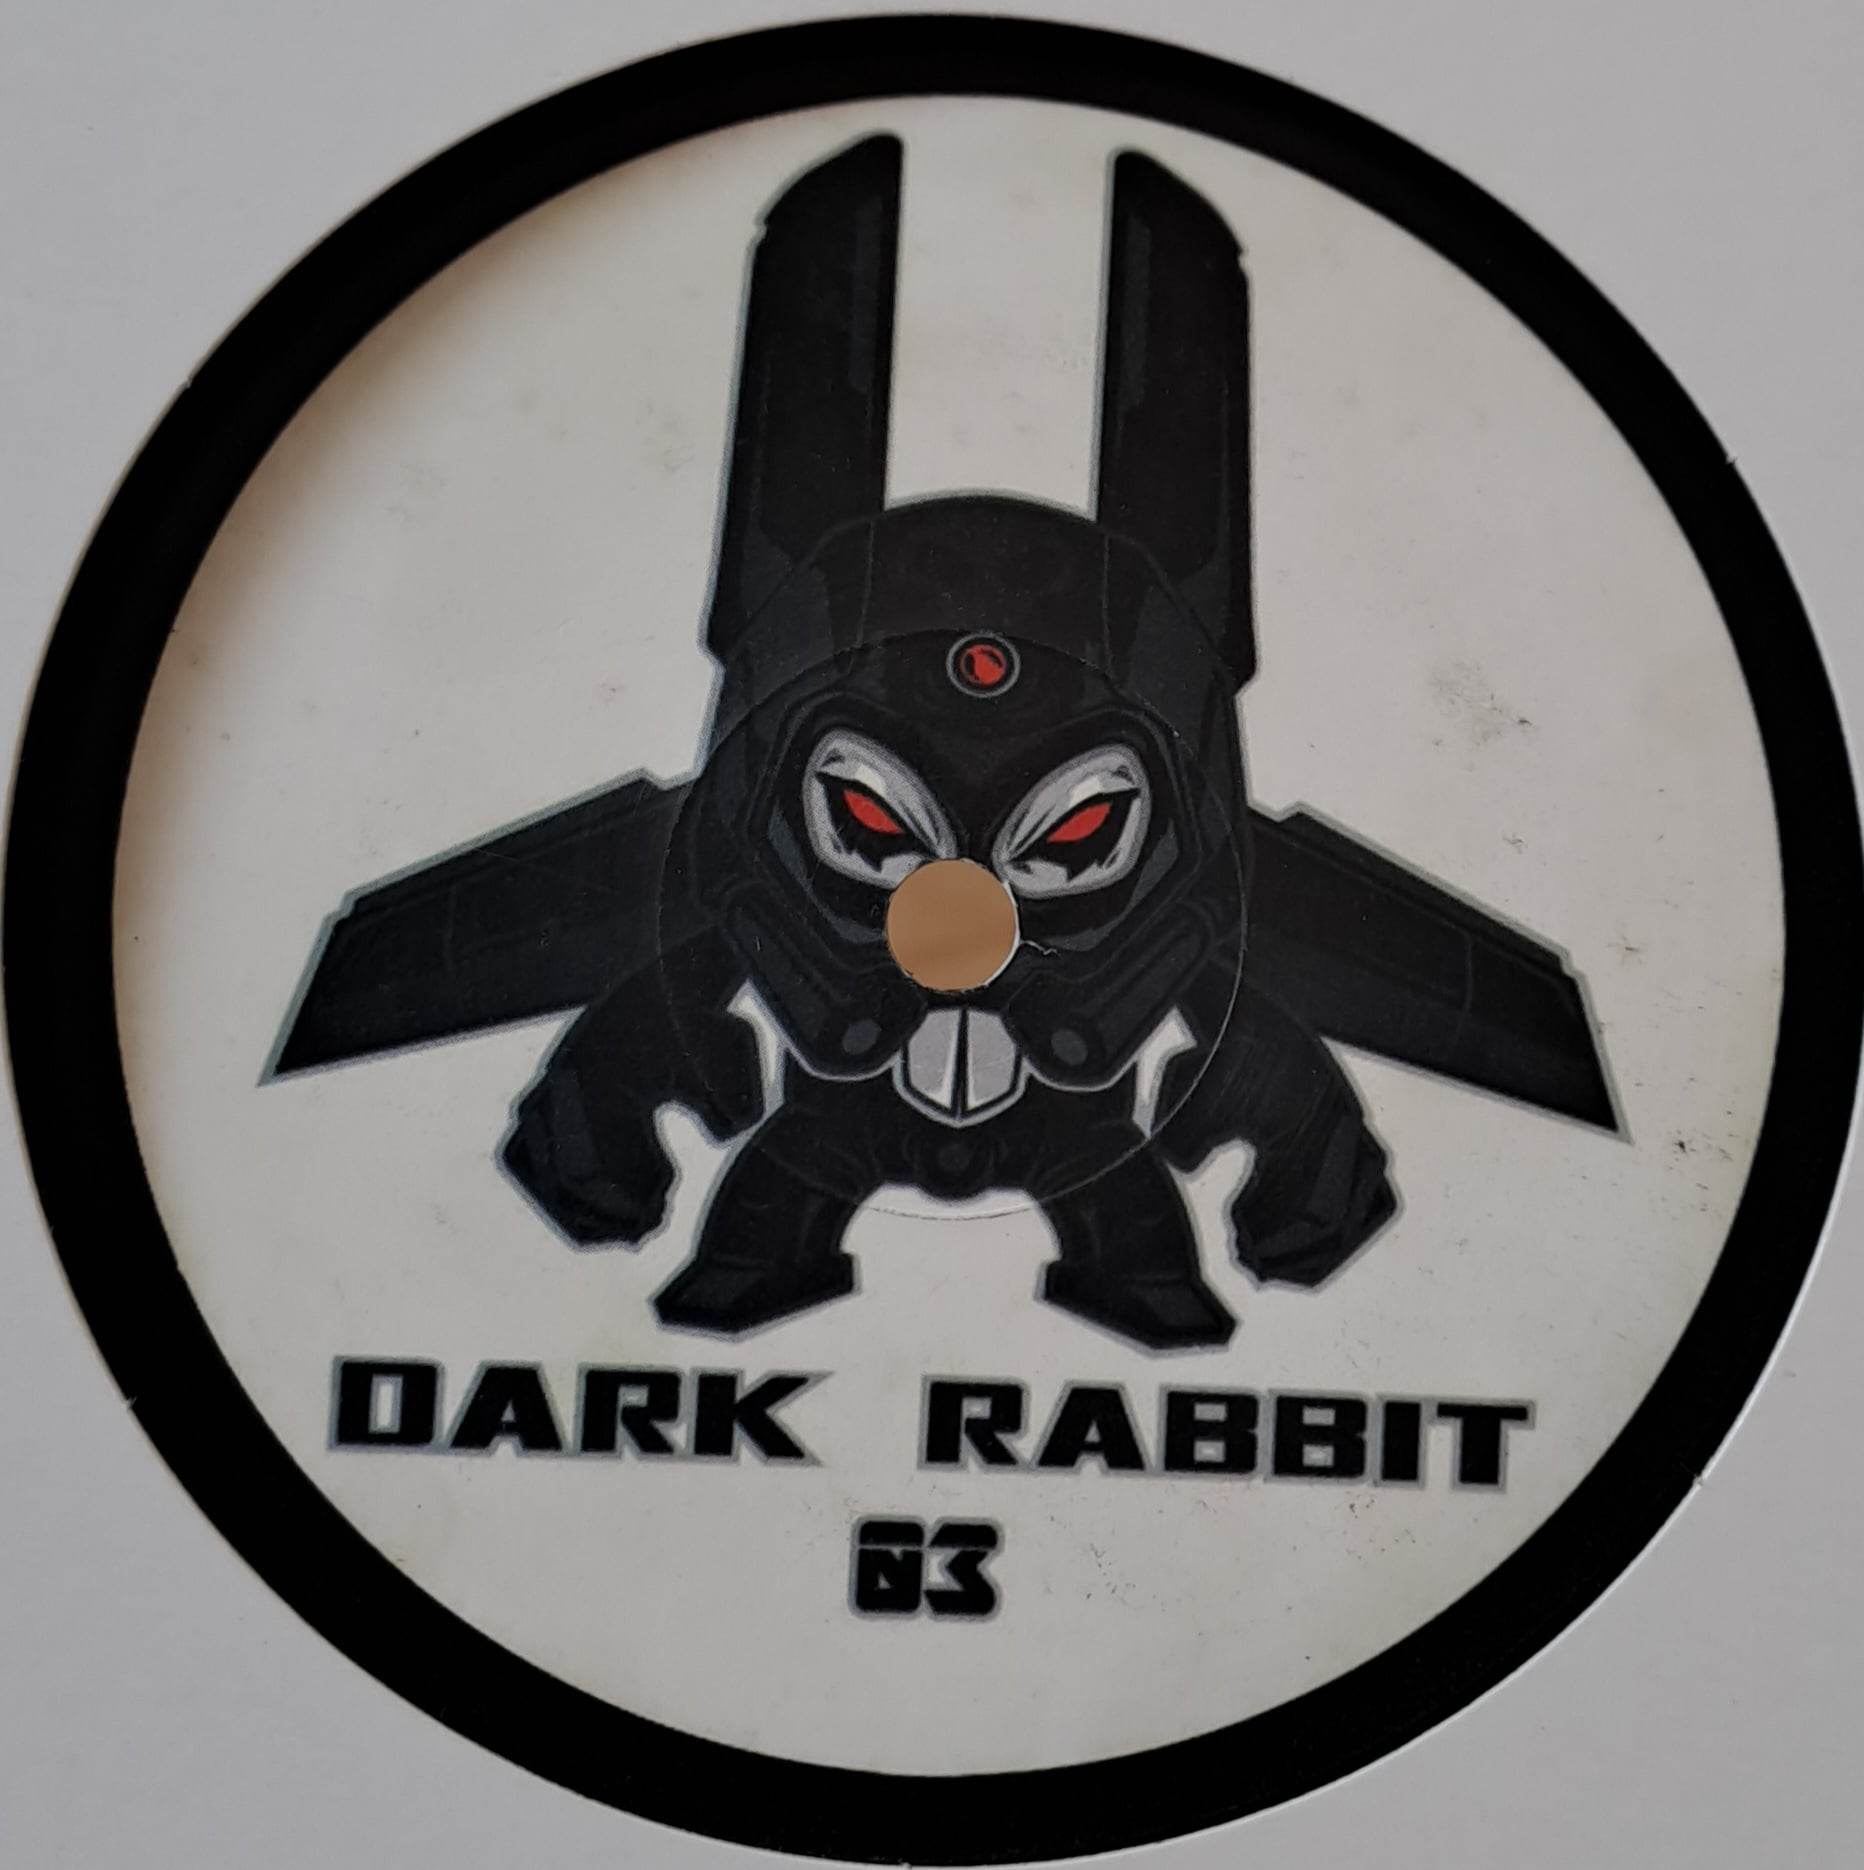 Dark Rabbit 03 - vinyle freetekno